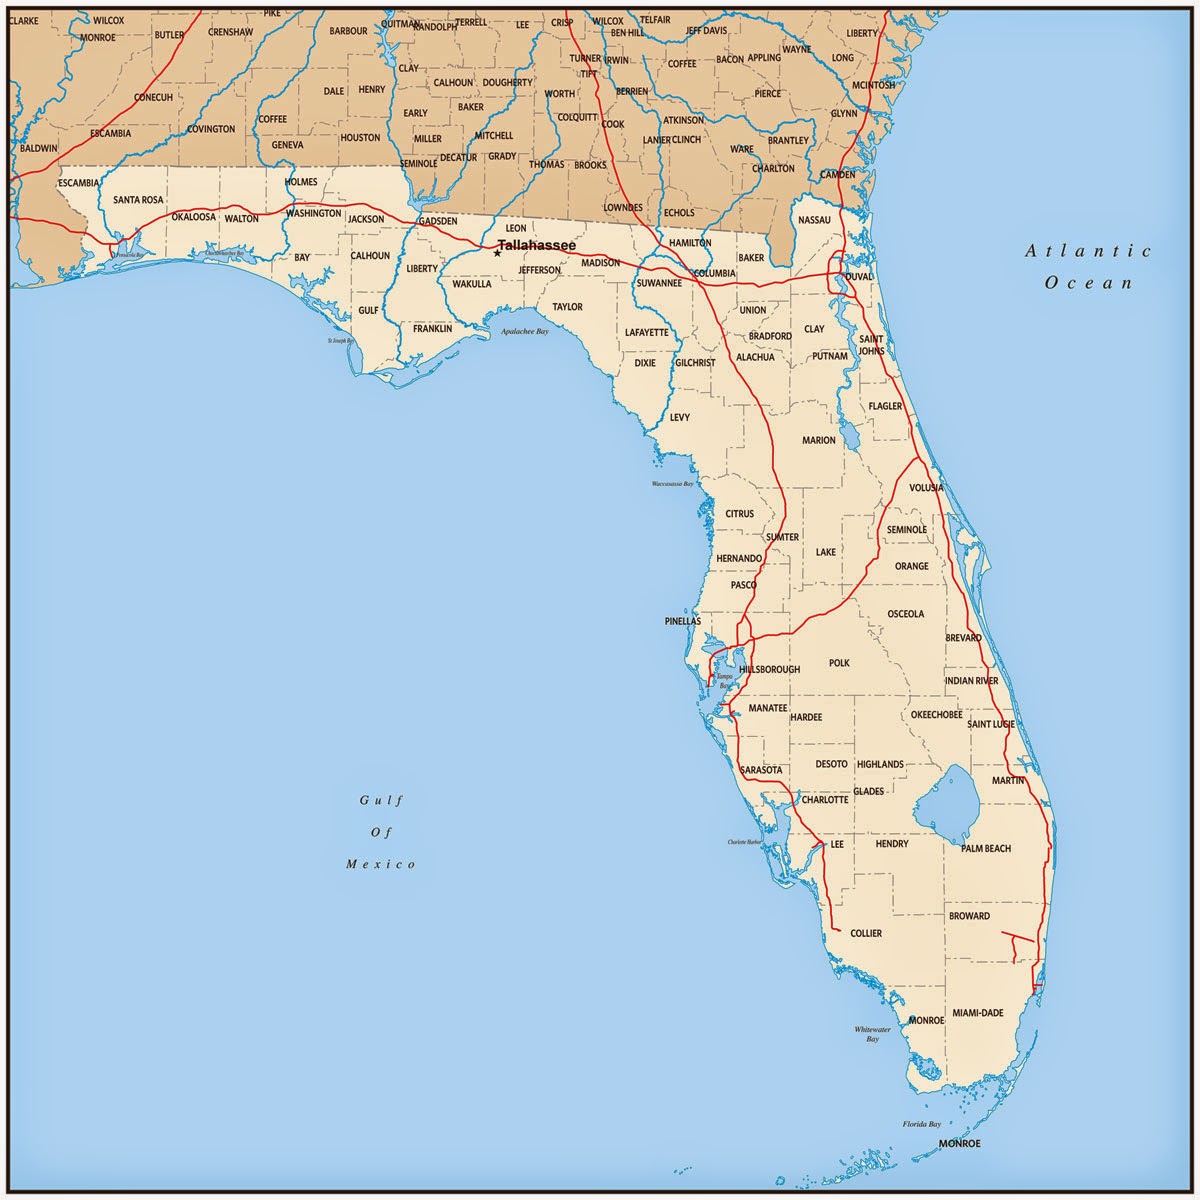 Florida State Map Printable